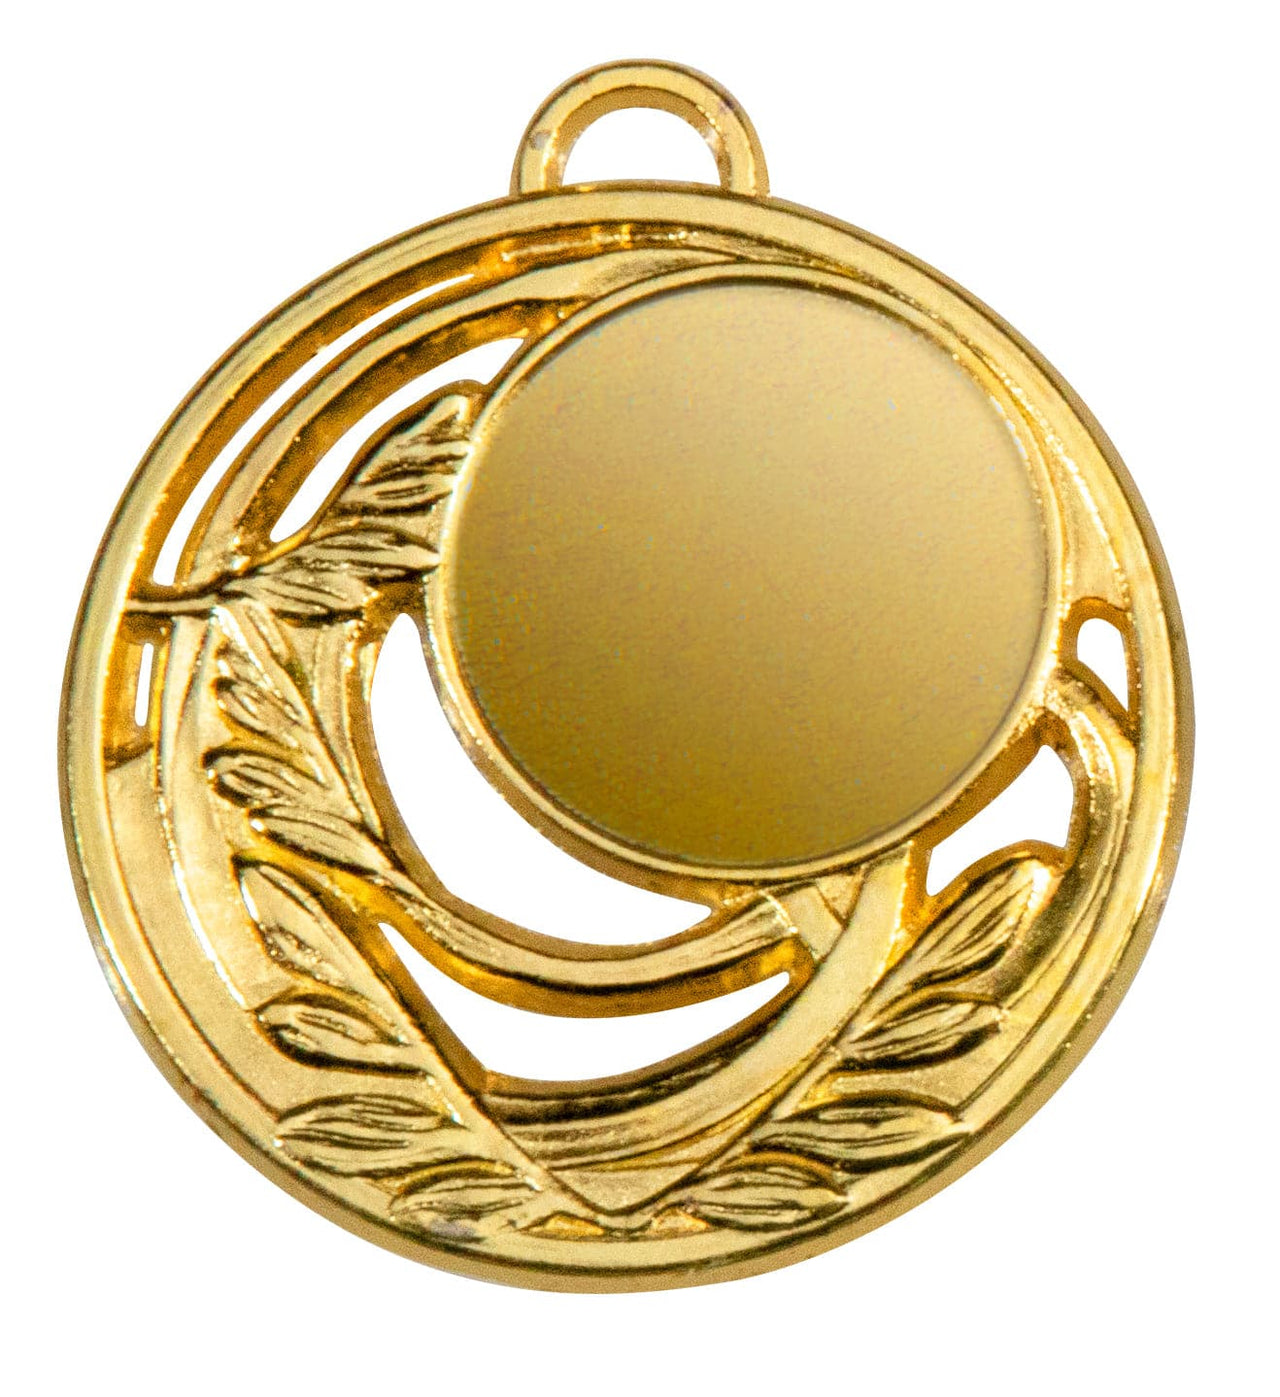 Eine runde Goldmedaille mit leerer Mitte und einem Blattmuster an den Rändern, die ein exklusives Design aufweist, das Eleganz ausstrahlt, die Medaillen Cottbus 50 mm PK79324g-E25.